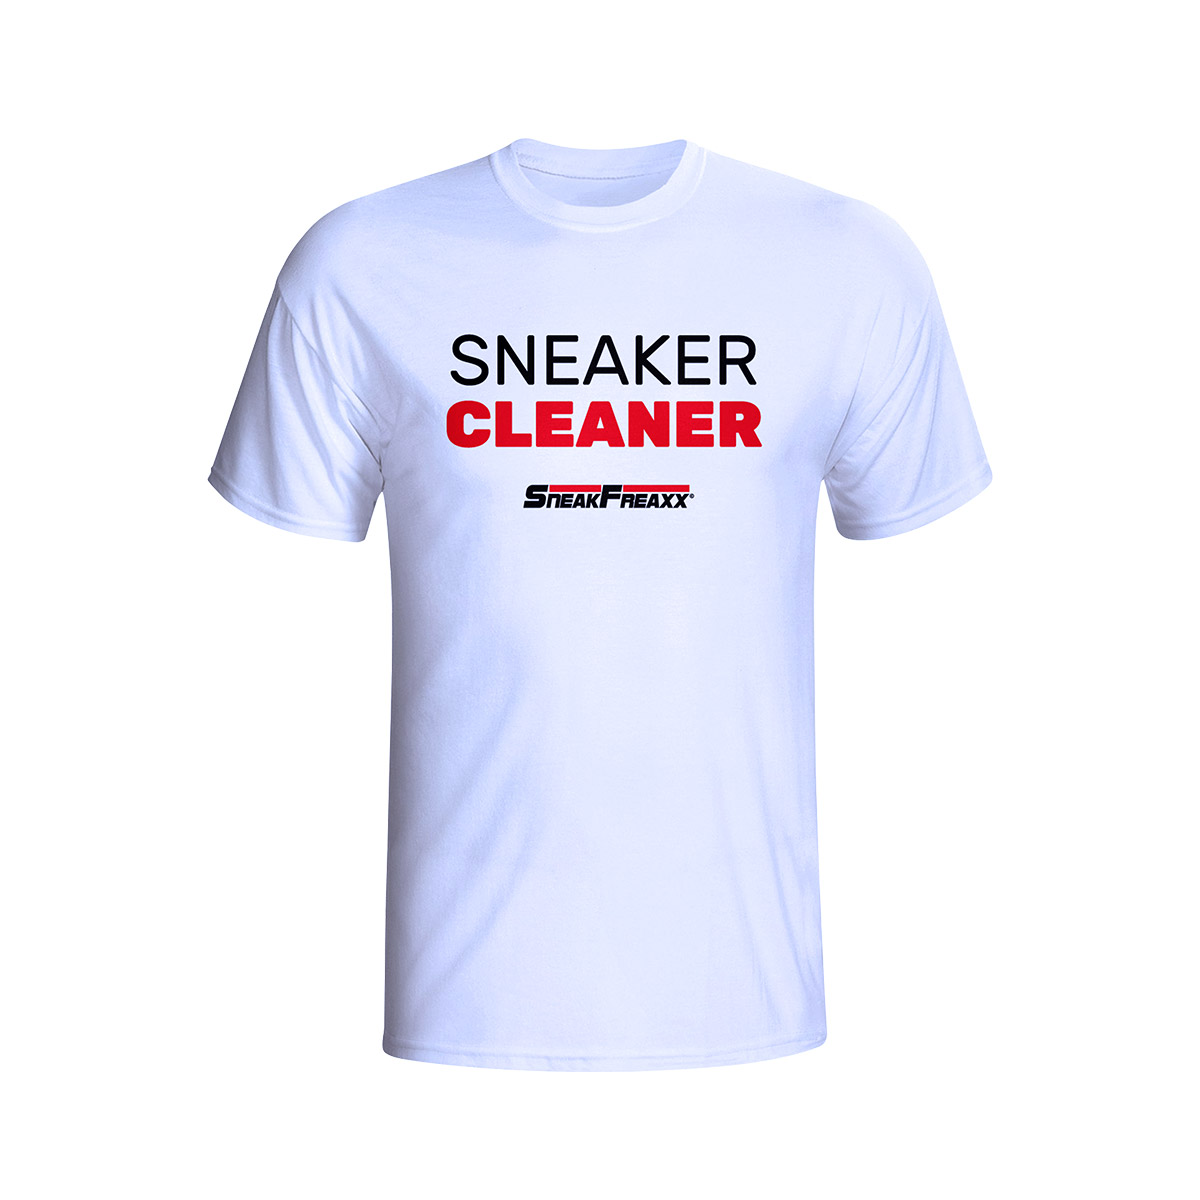 T-SHIRT - SNEAKER CLEANER